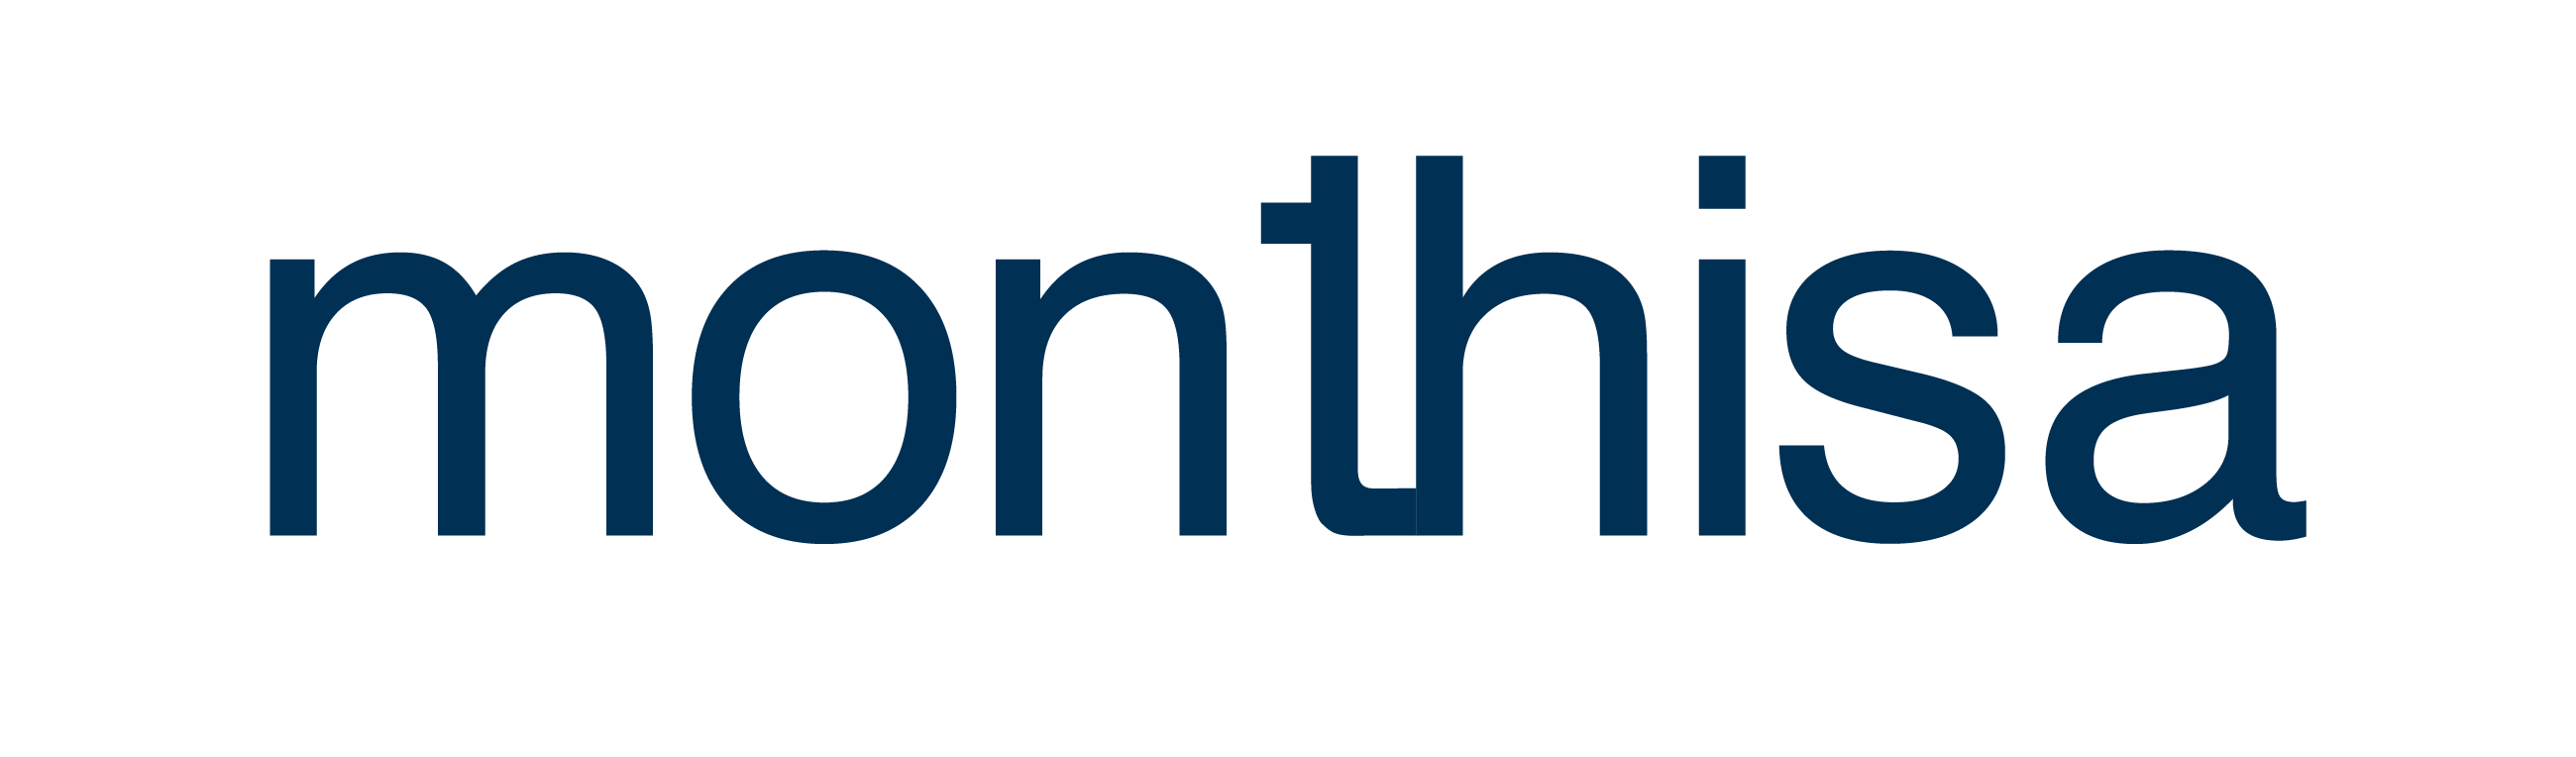 Monthisa logo